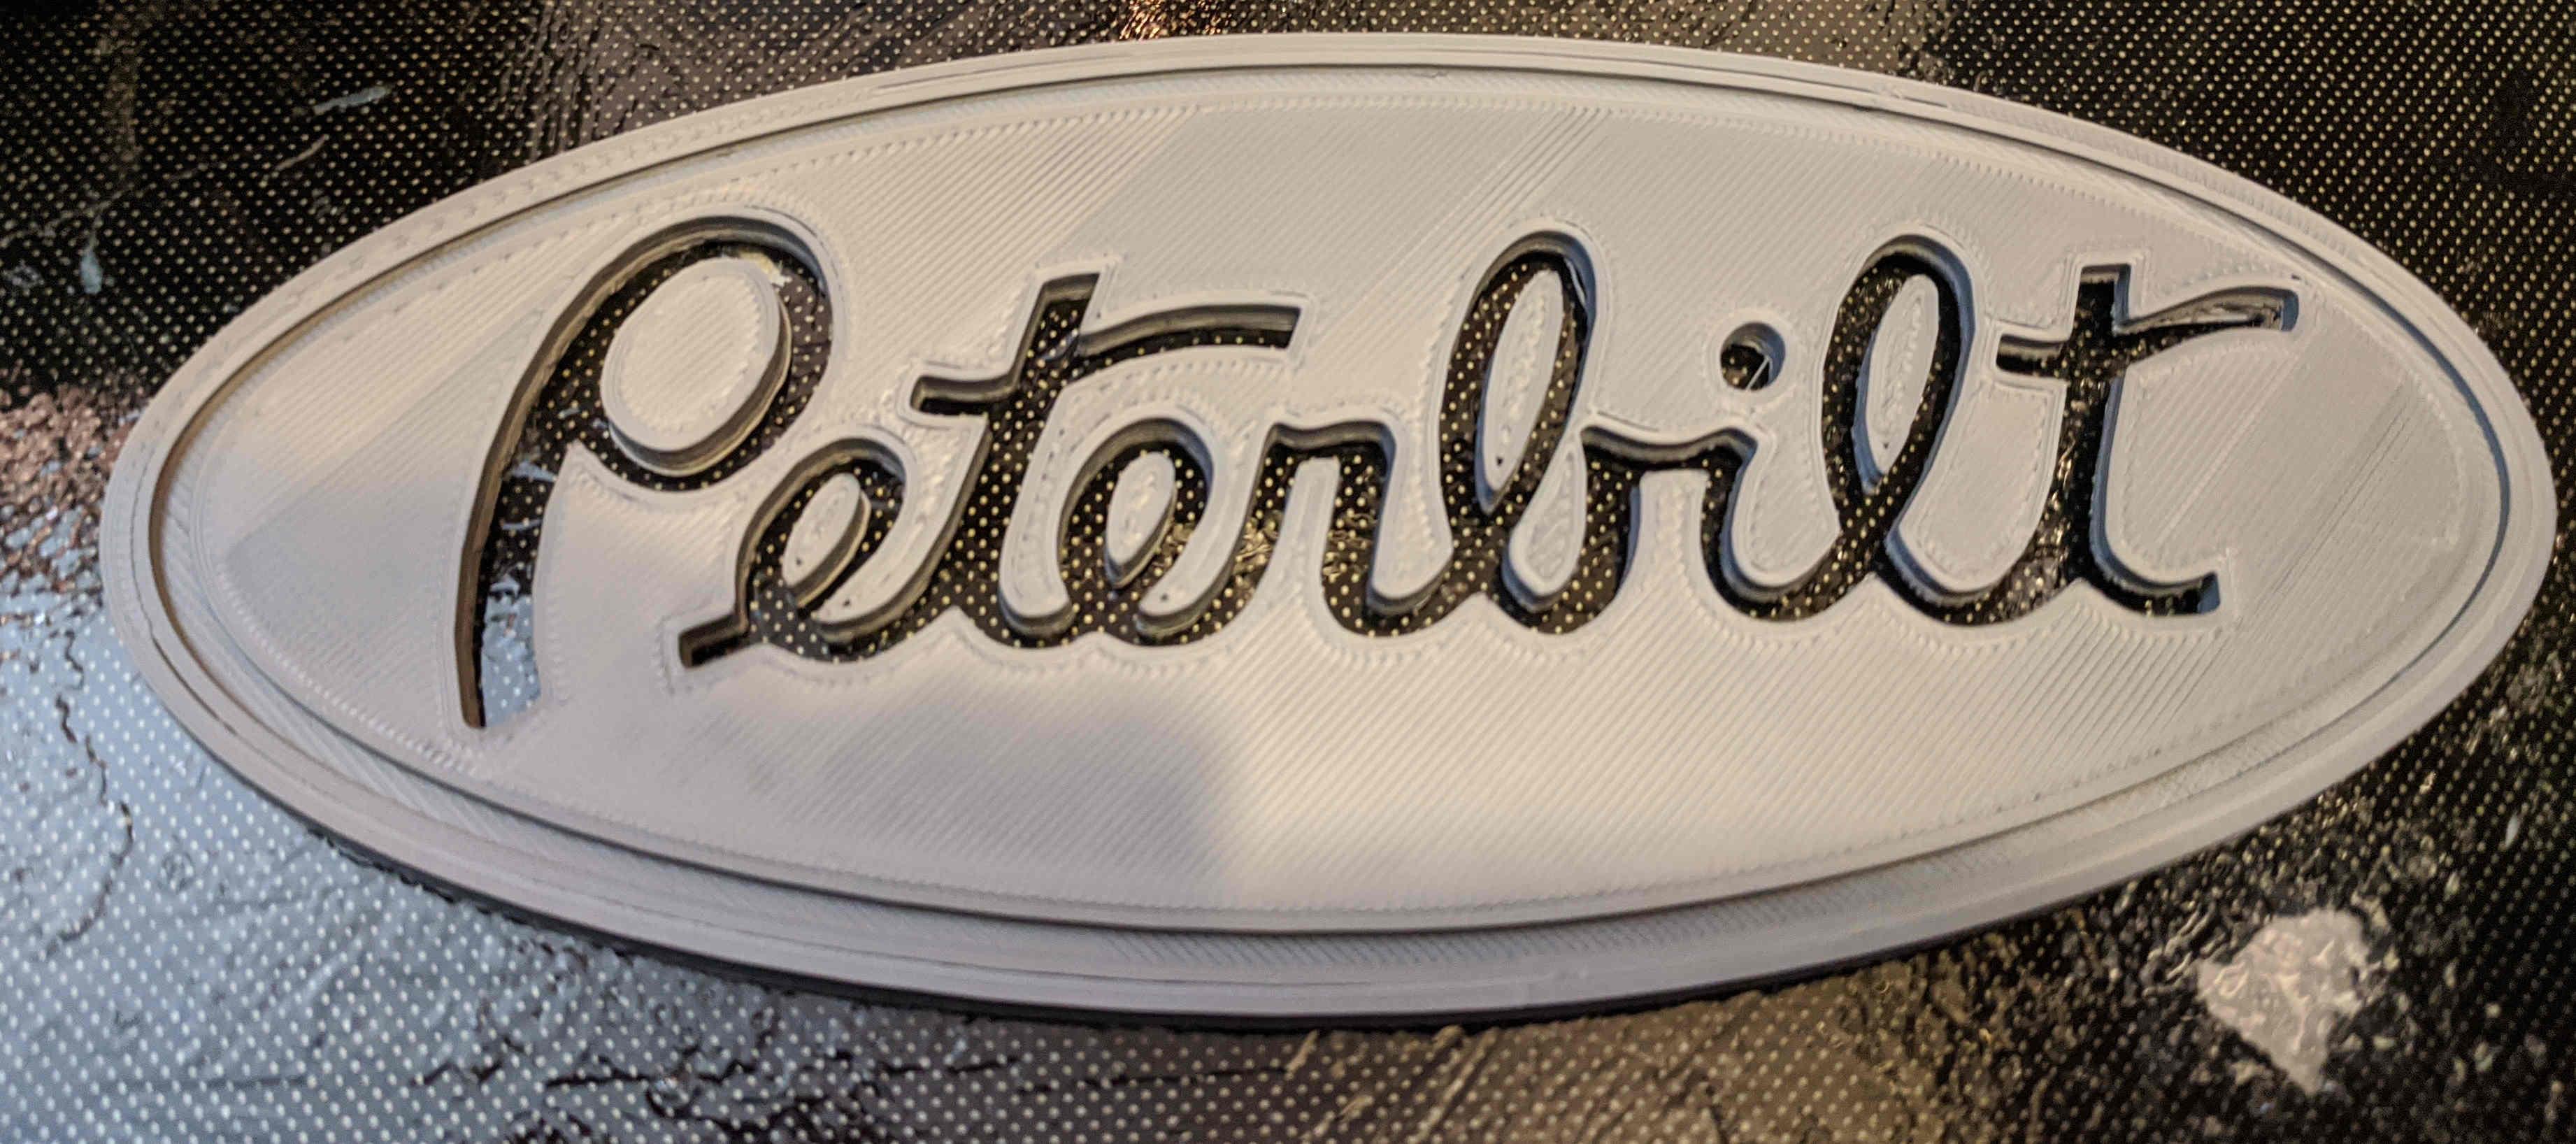 Peterbilt Oval badge 3d model